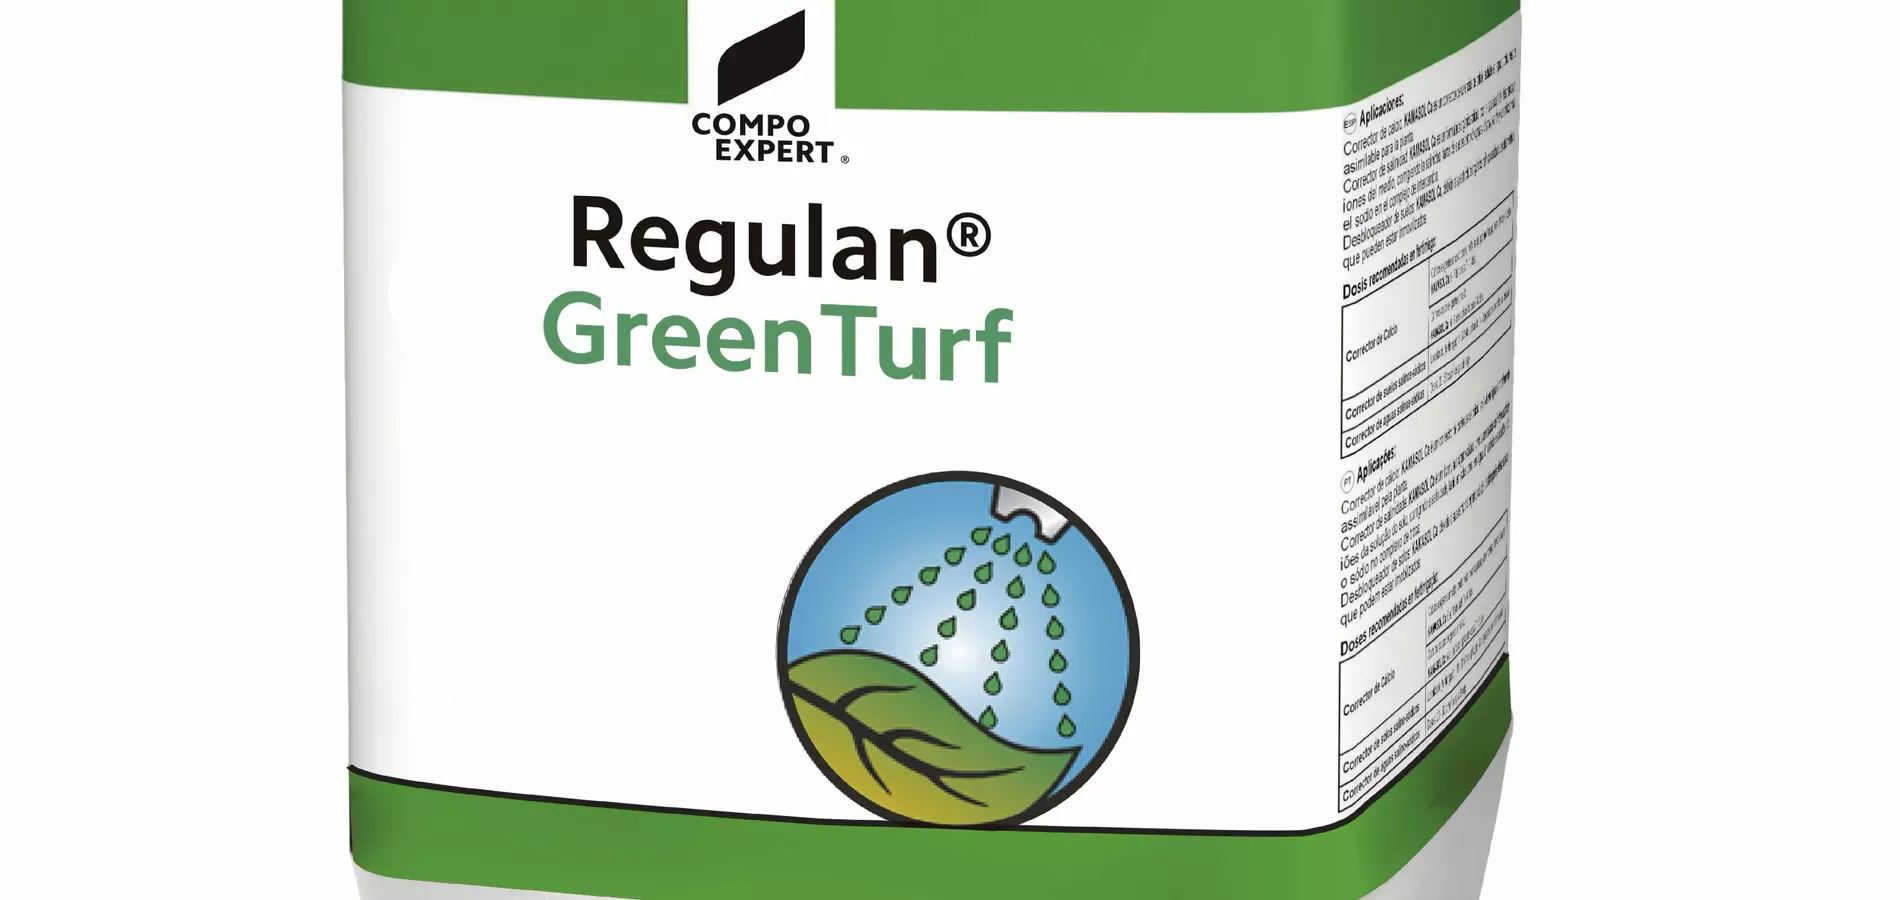 COMPO EXPERT lanza Regulan® GreenTurf, el pigmento para césped más resistente